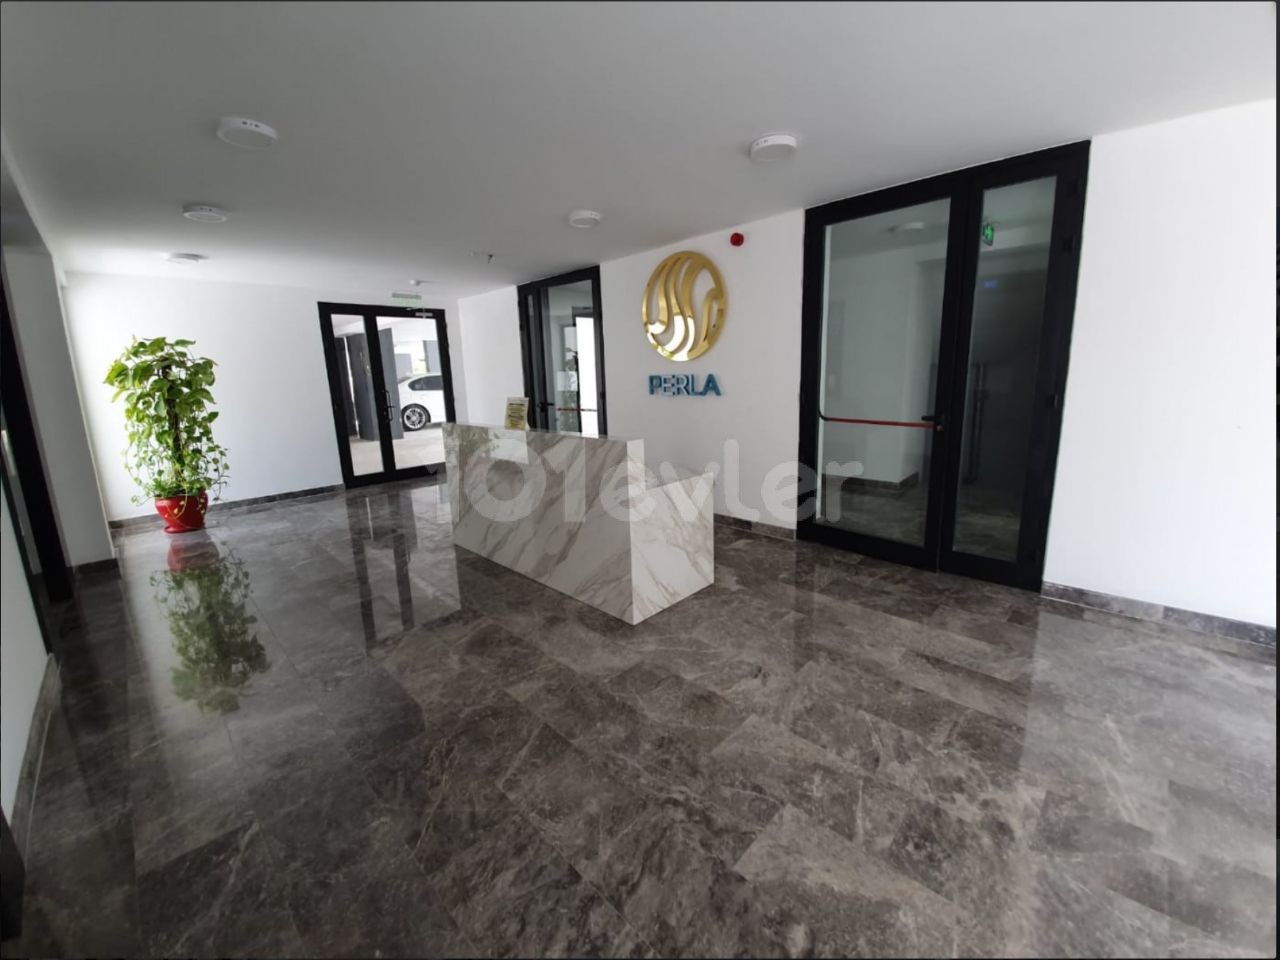 3+1 Wohnung zum Verkauf in der Perla Residence im Zentrum von Kyrenia